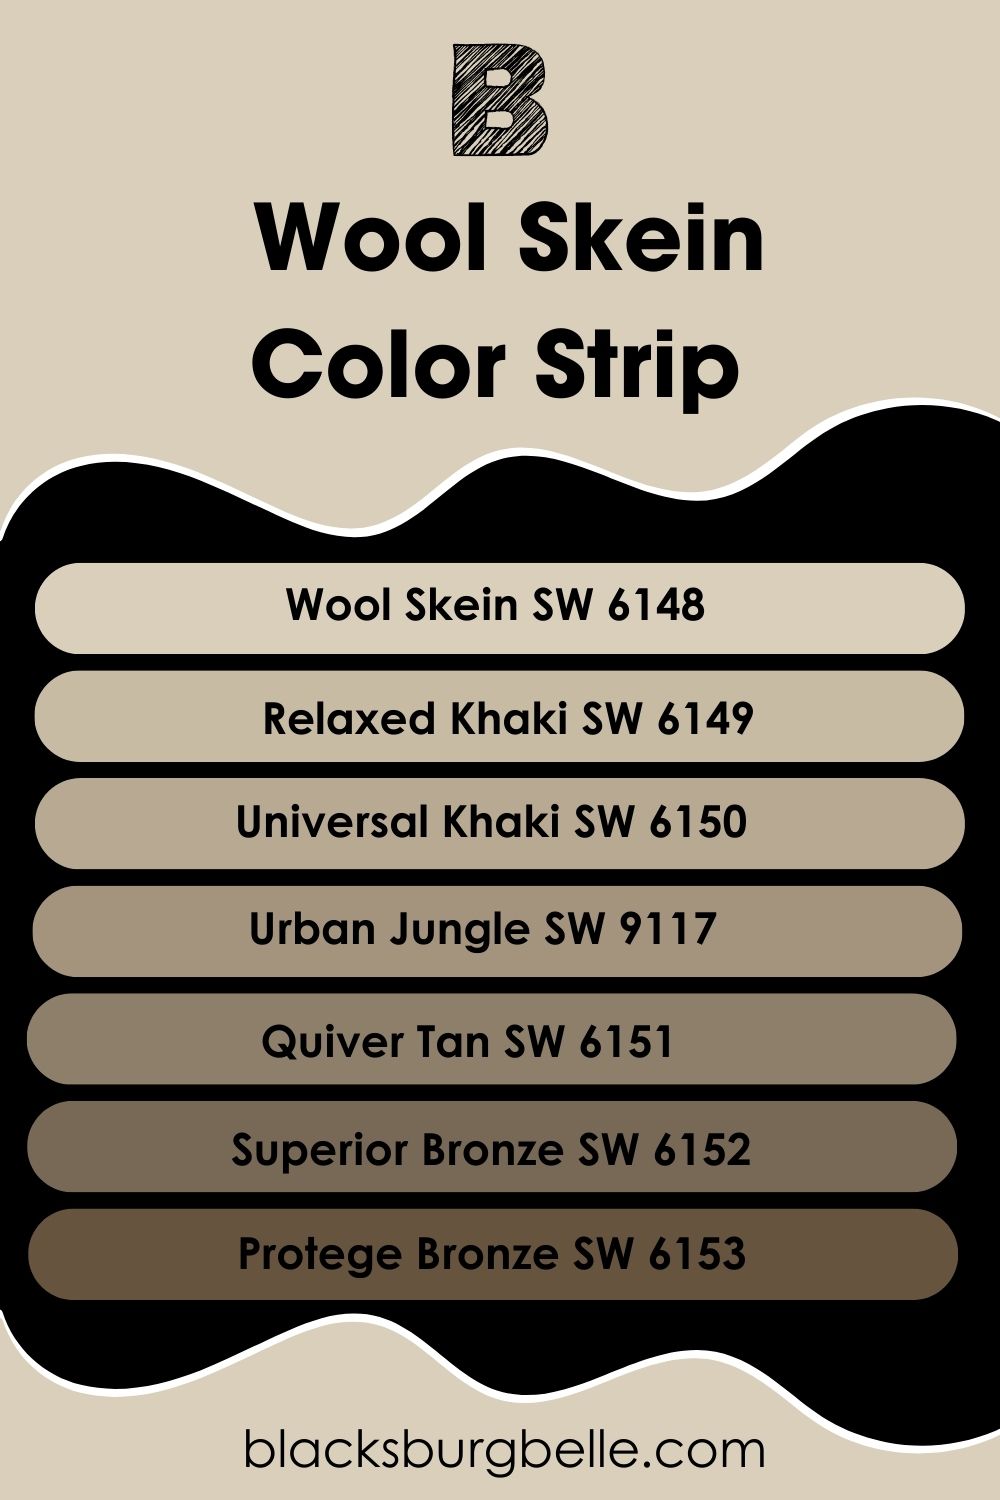 Wool Skein Color Strip